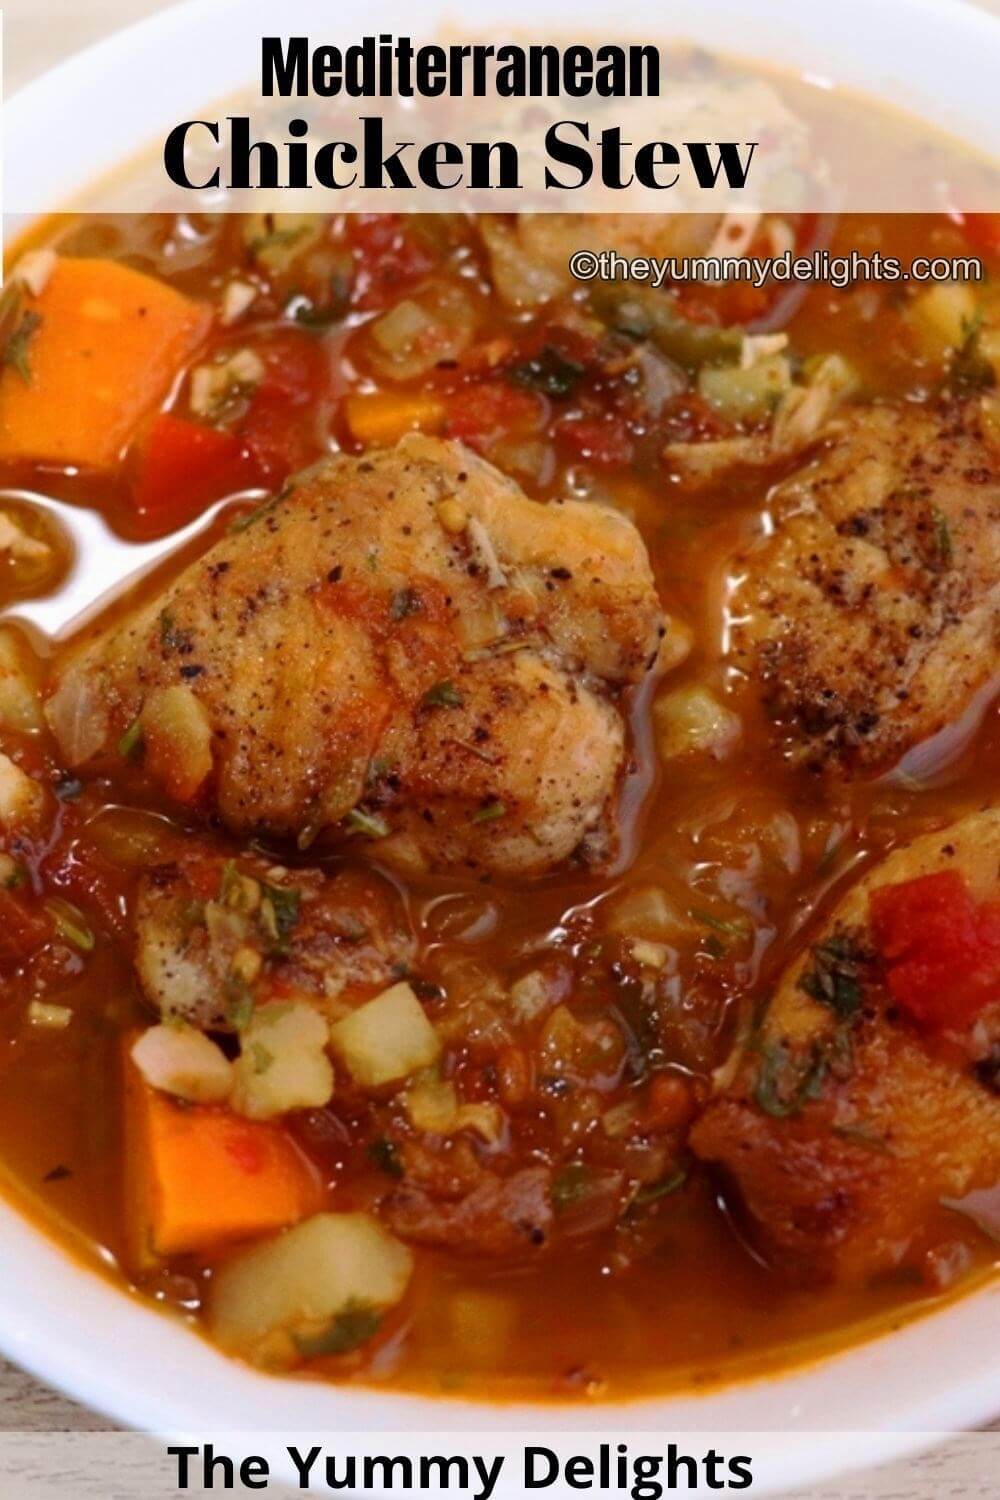 Mediterranean Chicken Stew - The Yummy Delights